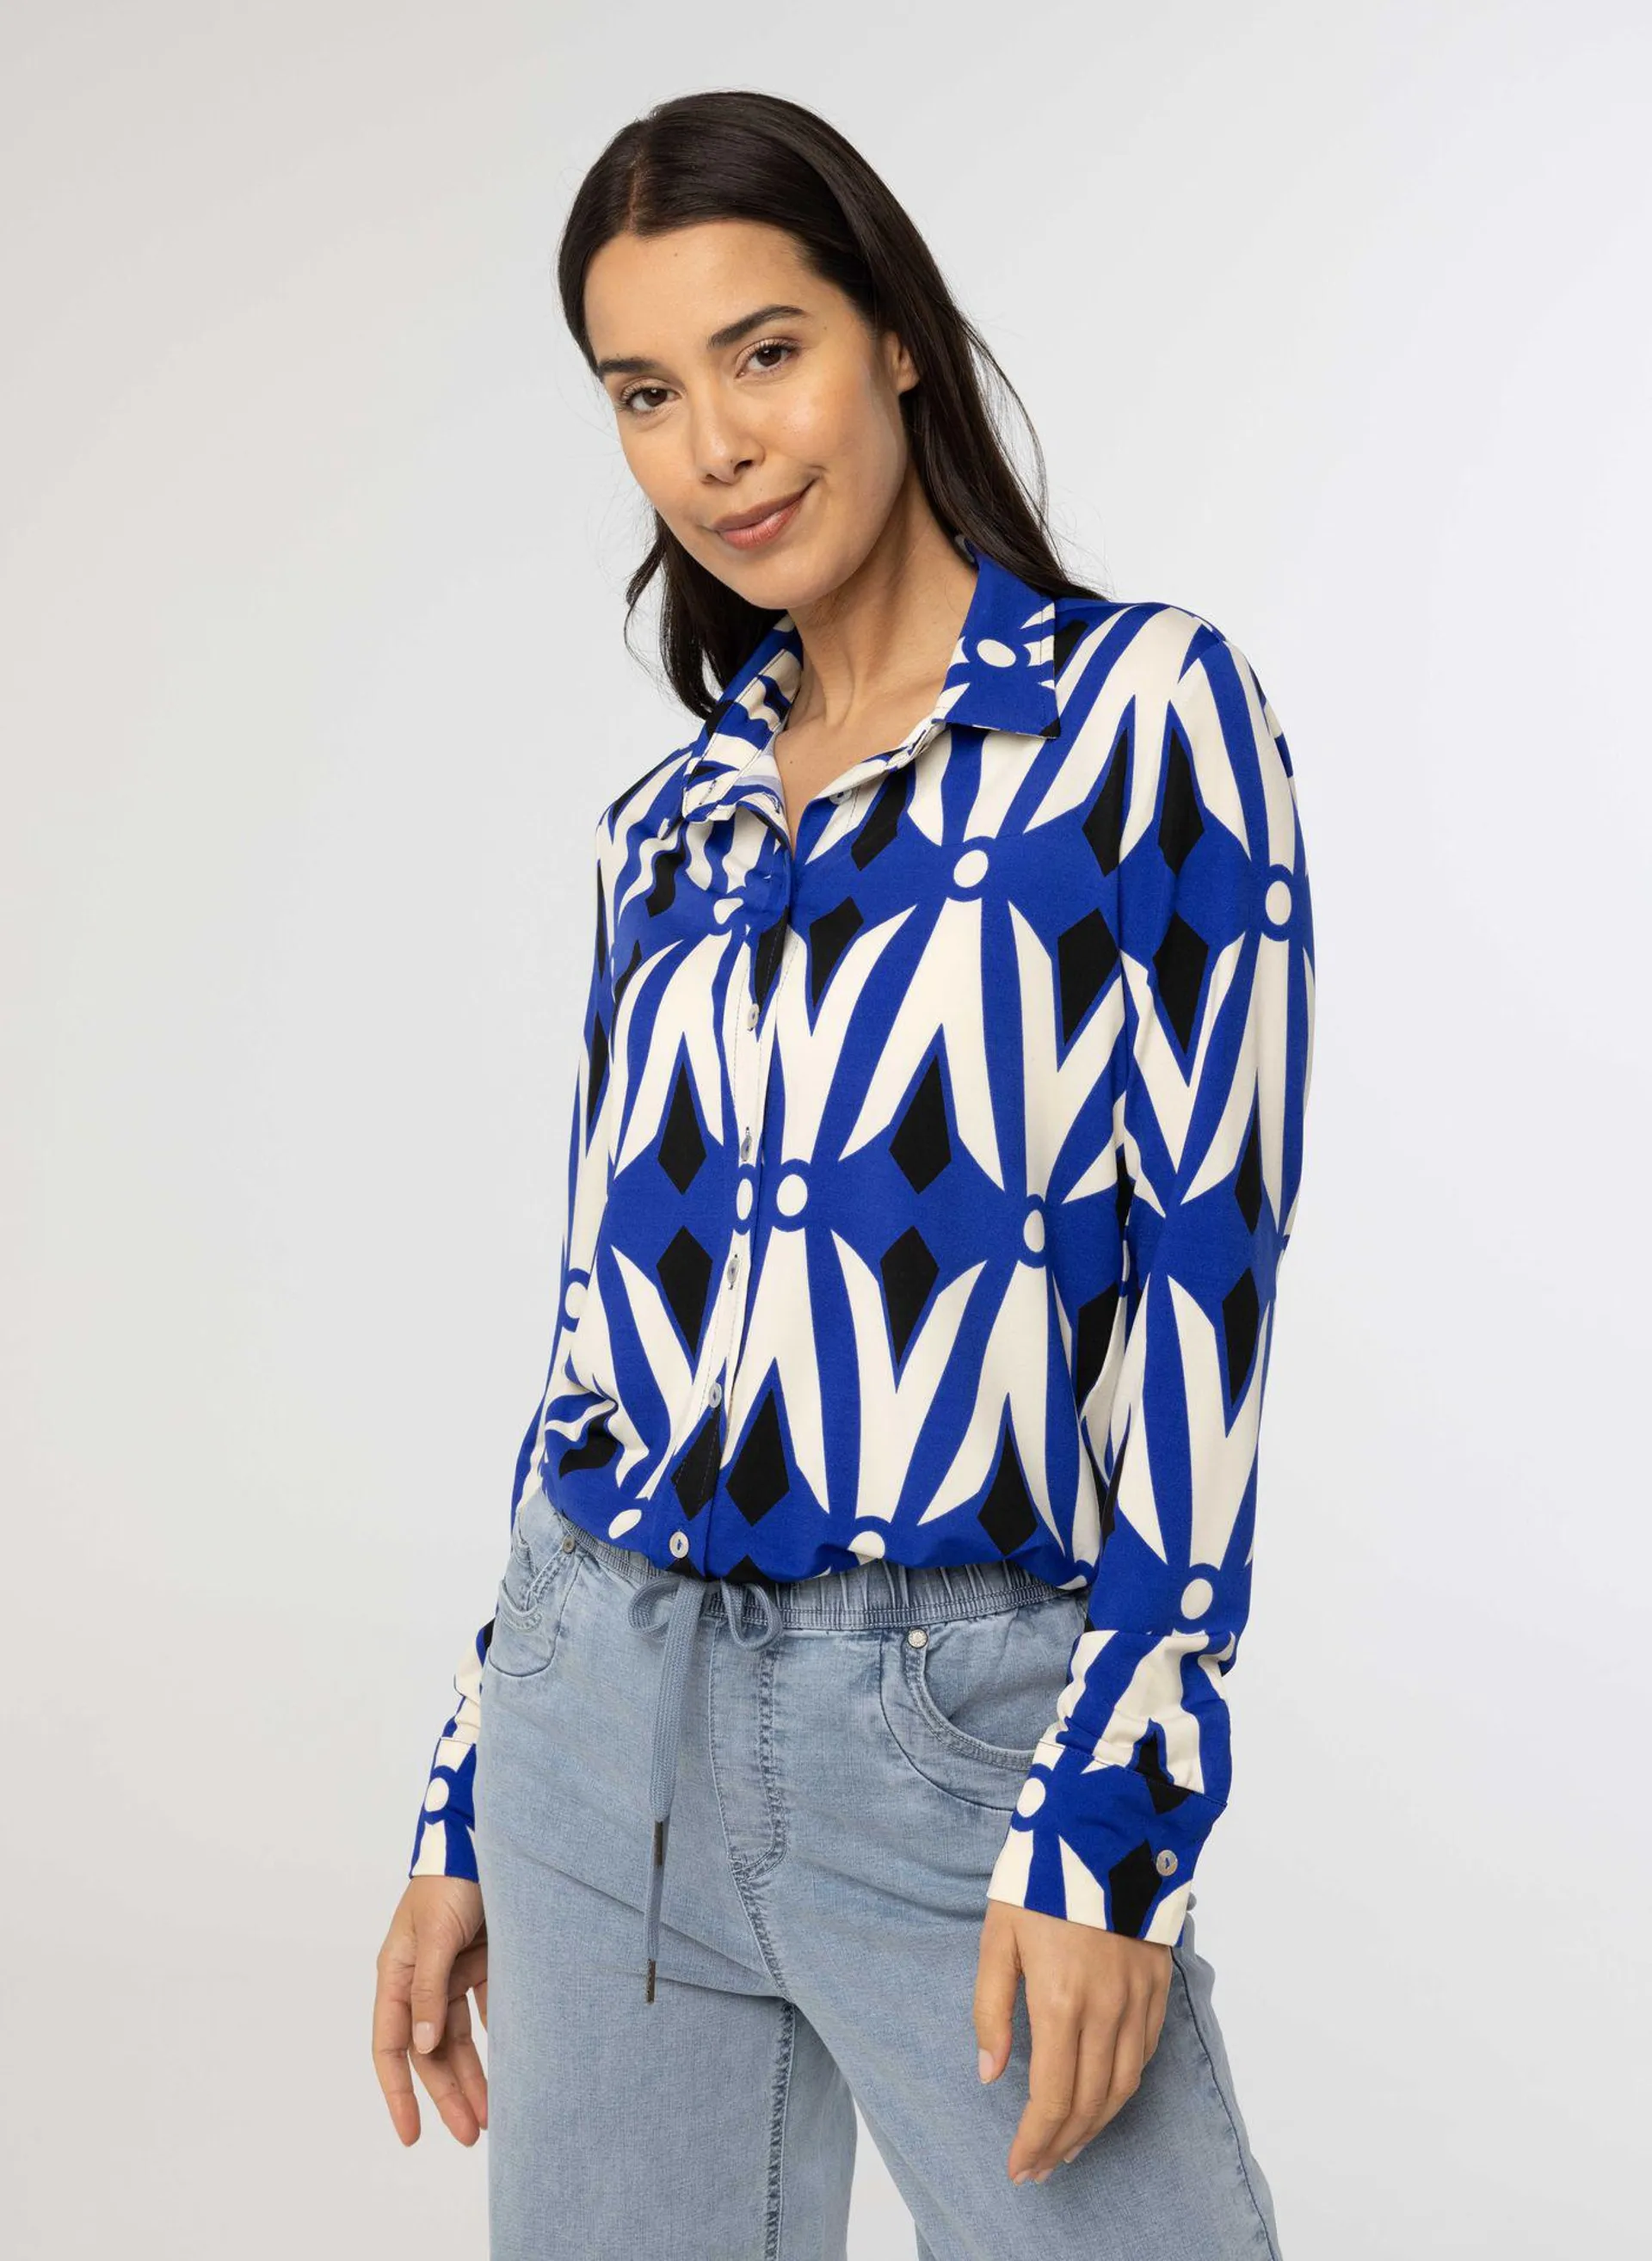 Kobaltblauwe blouse met print